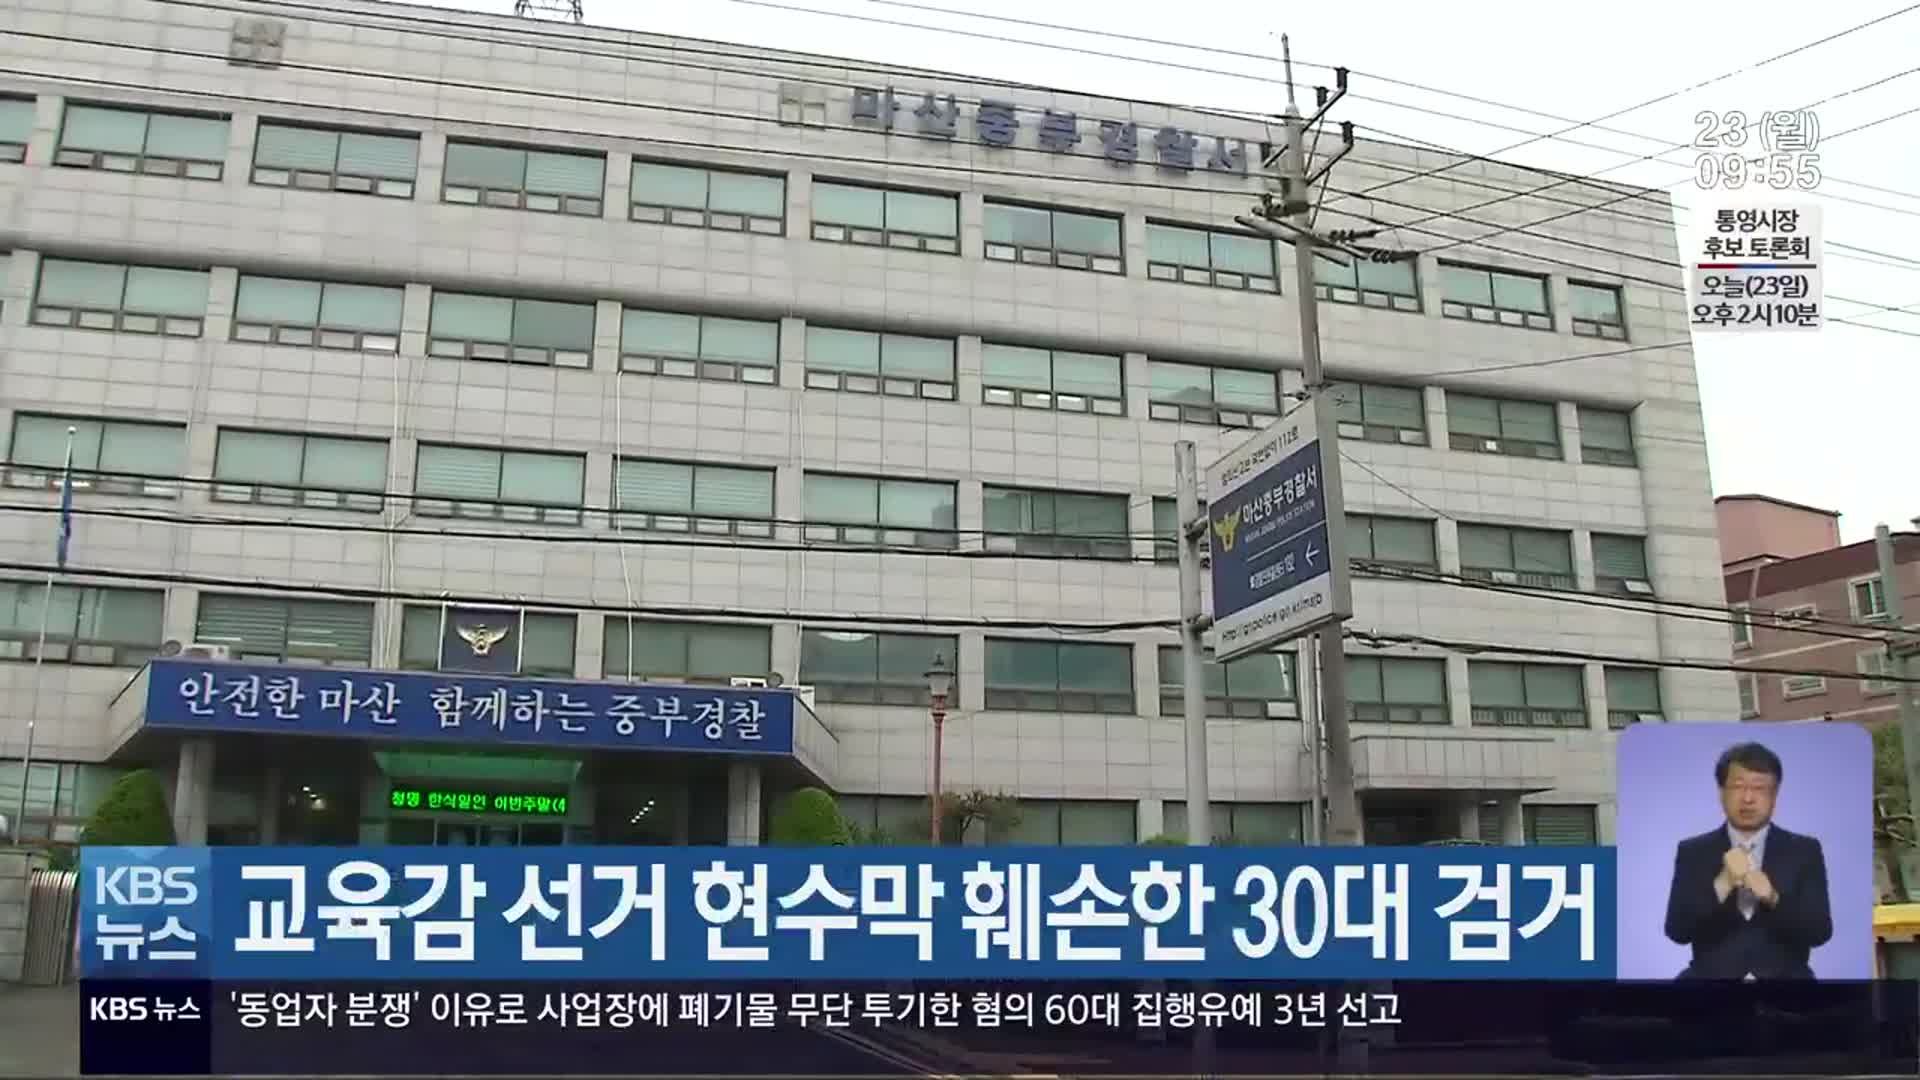 교육감 선거 현수막 훼손한 30대 검거